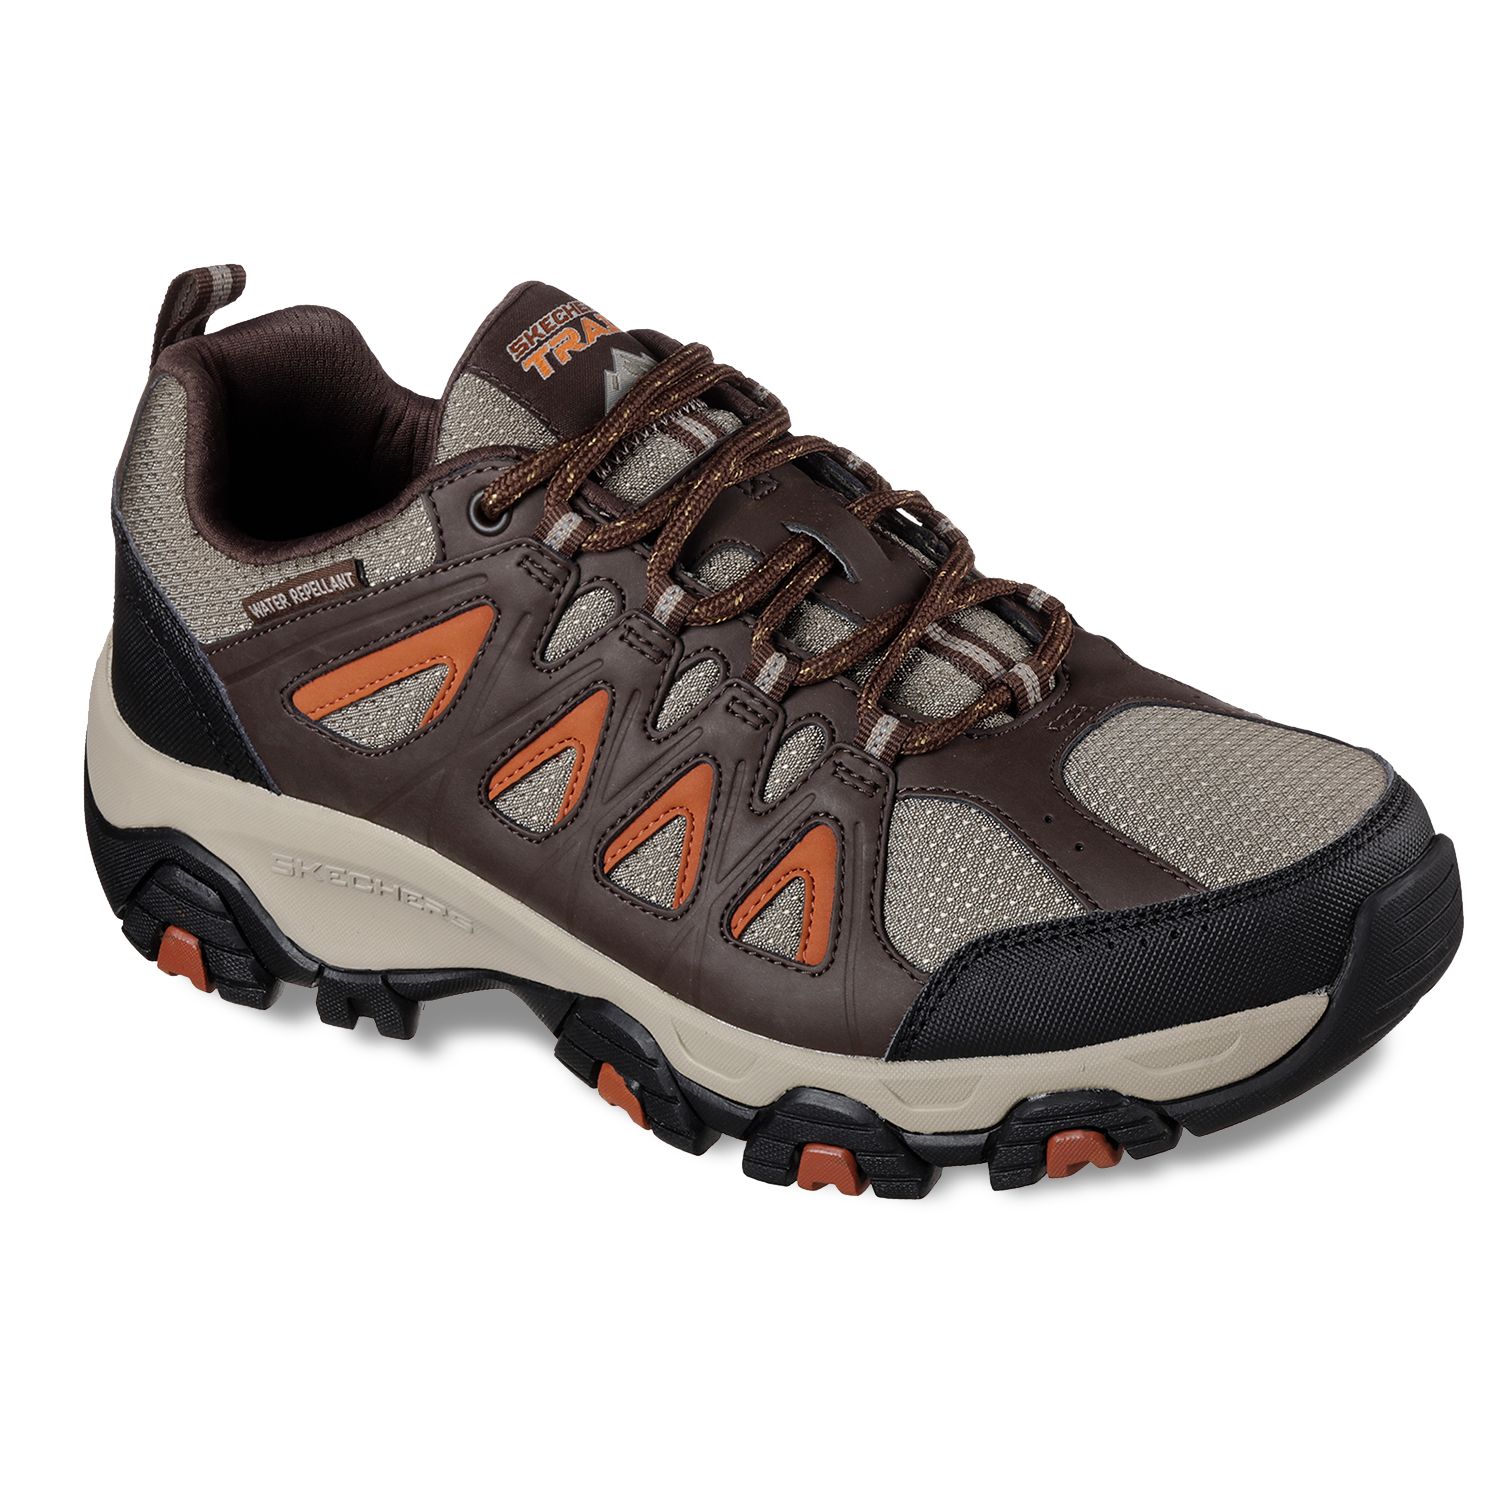 skechers men's terrabite oxford trail walking hiking shoe